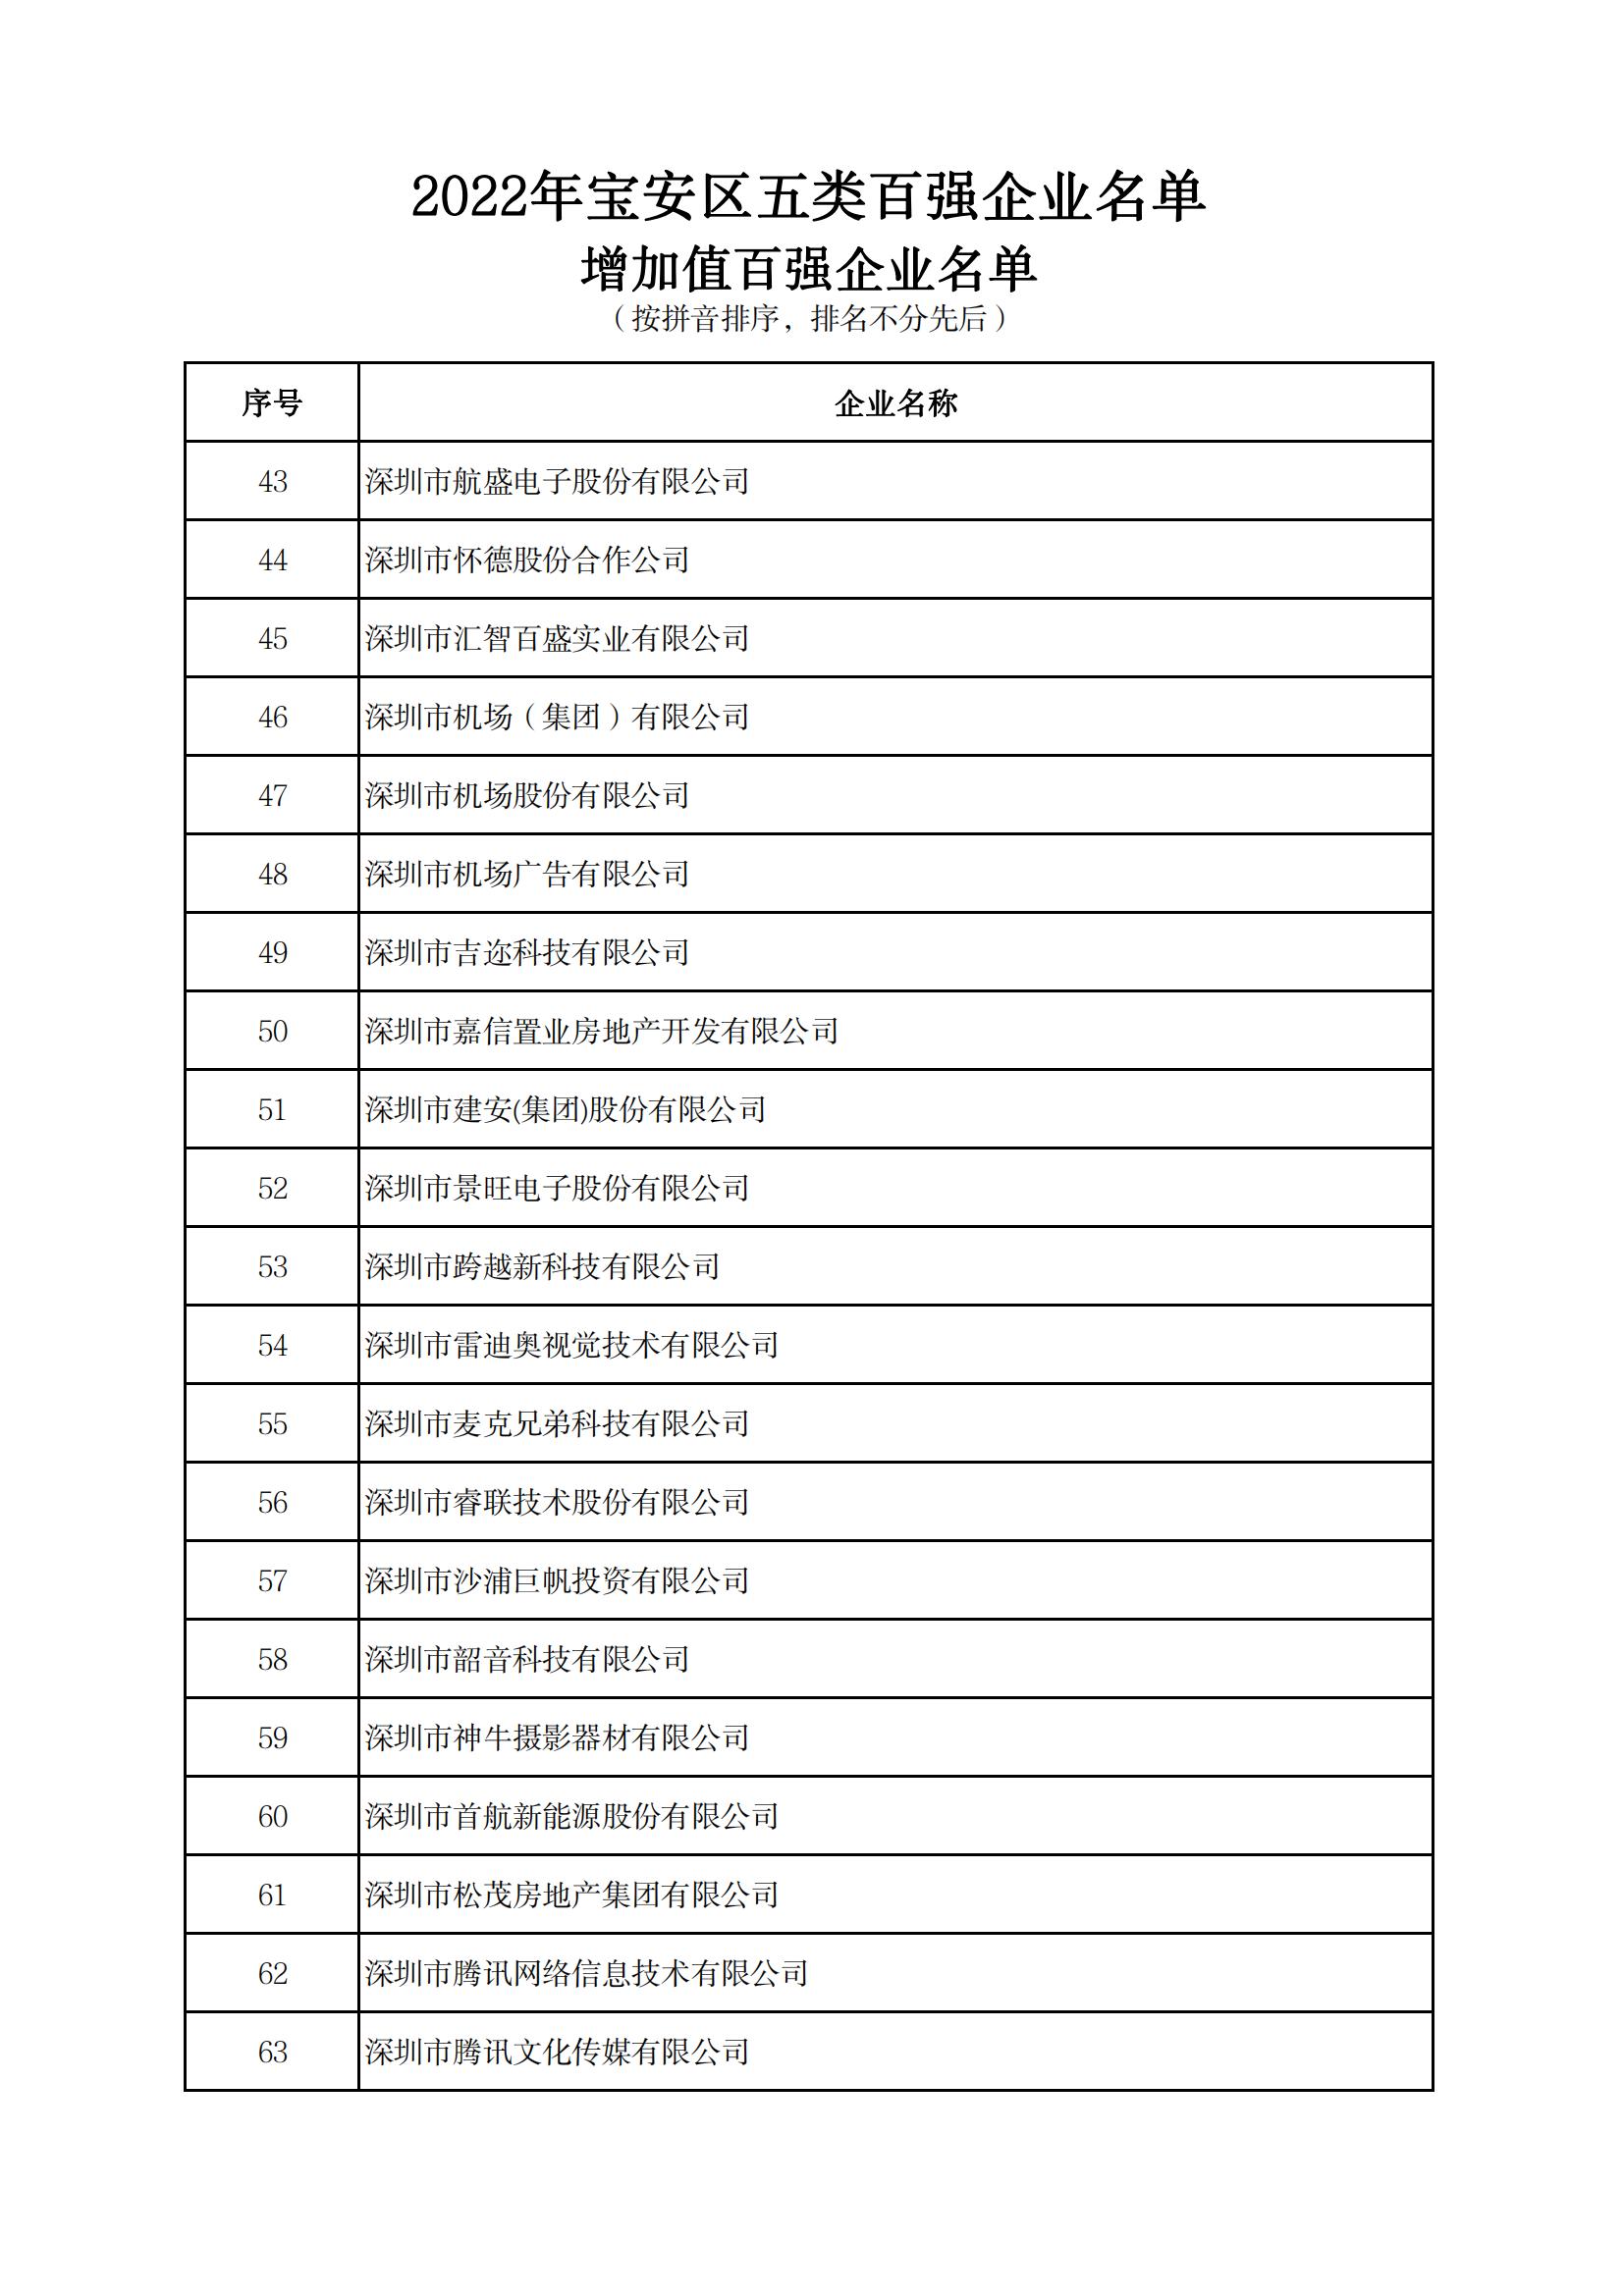 附件：2022年宝安区五类百强企业名单_07.jpg